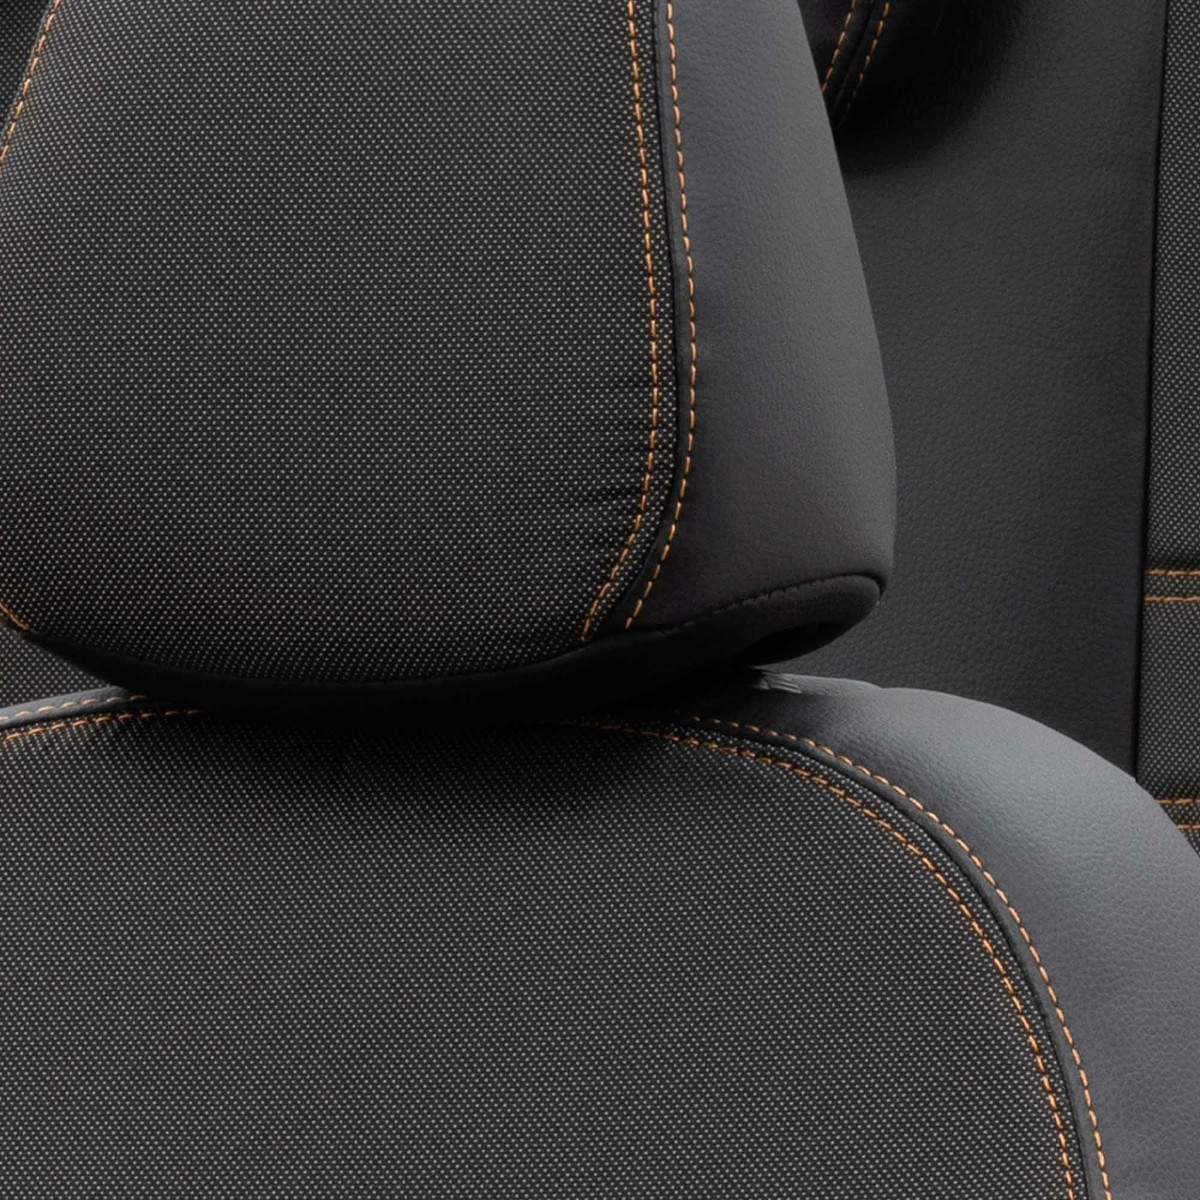 Colorado 2x Einzelsitz vorne 2-tlg. silber passend für VW Caddy Life ab  01/2008 bis 05/2015, Business Class, Sitzbezüge, PETEX Onlineshop